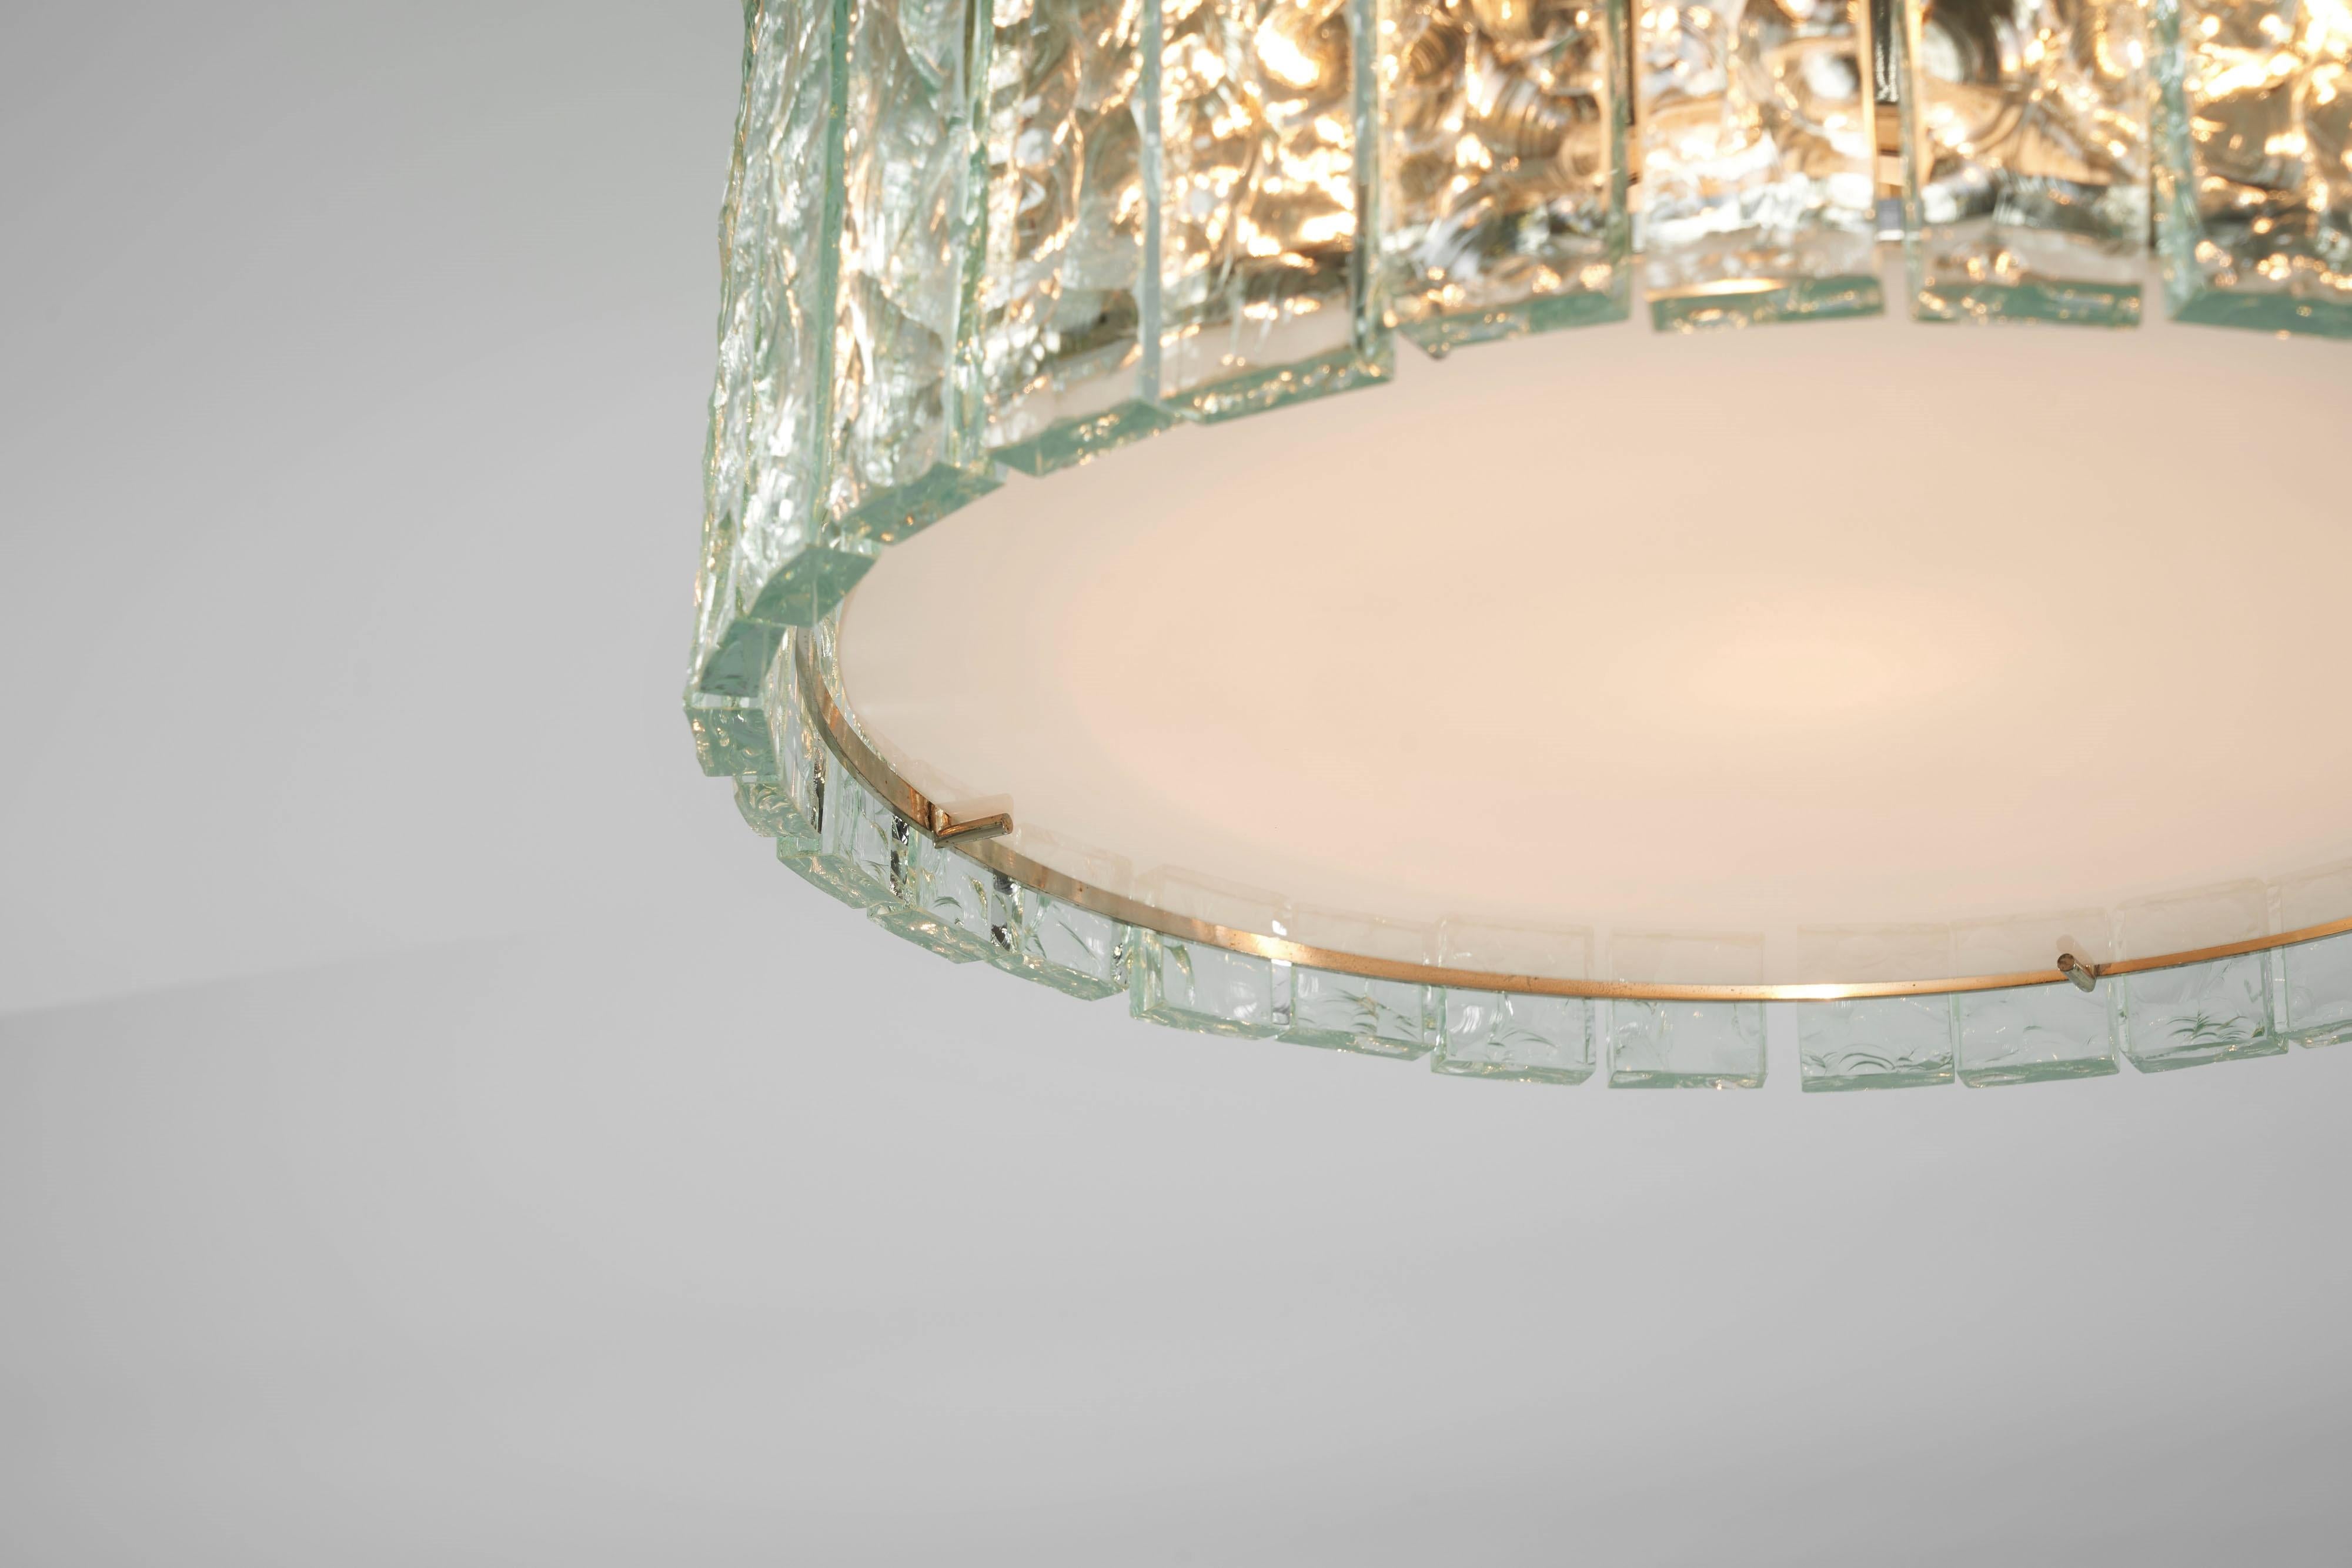 Wunderschöne Deckenleuchte Modell 2448, entworfen von Max Ingrand und hergestellt von Fontana Arte in Italien 1960. Die Lampen haben eine runde, verchromte Struktur, die zweiunddreißig rechteckige, gemeißelte Glasstücke in einem Kreis hält, die das